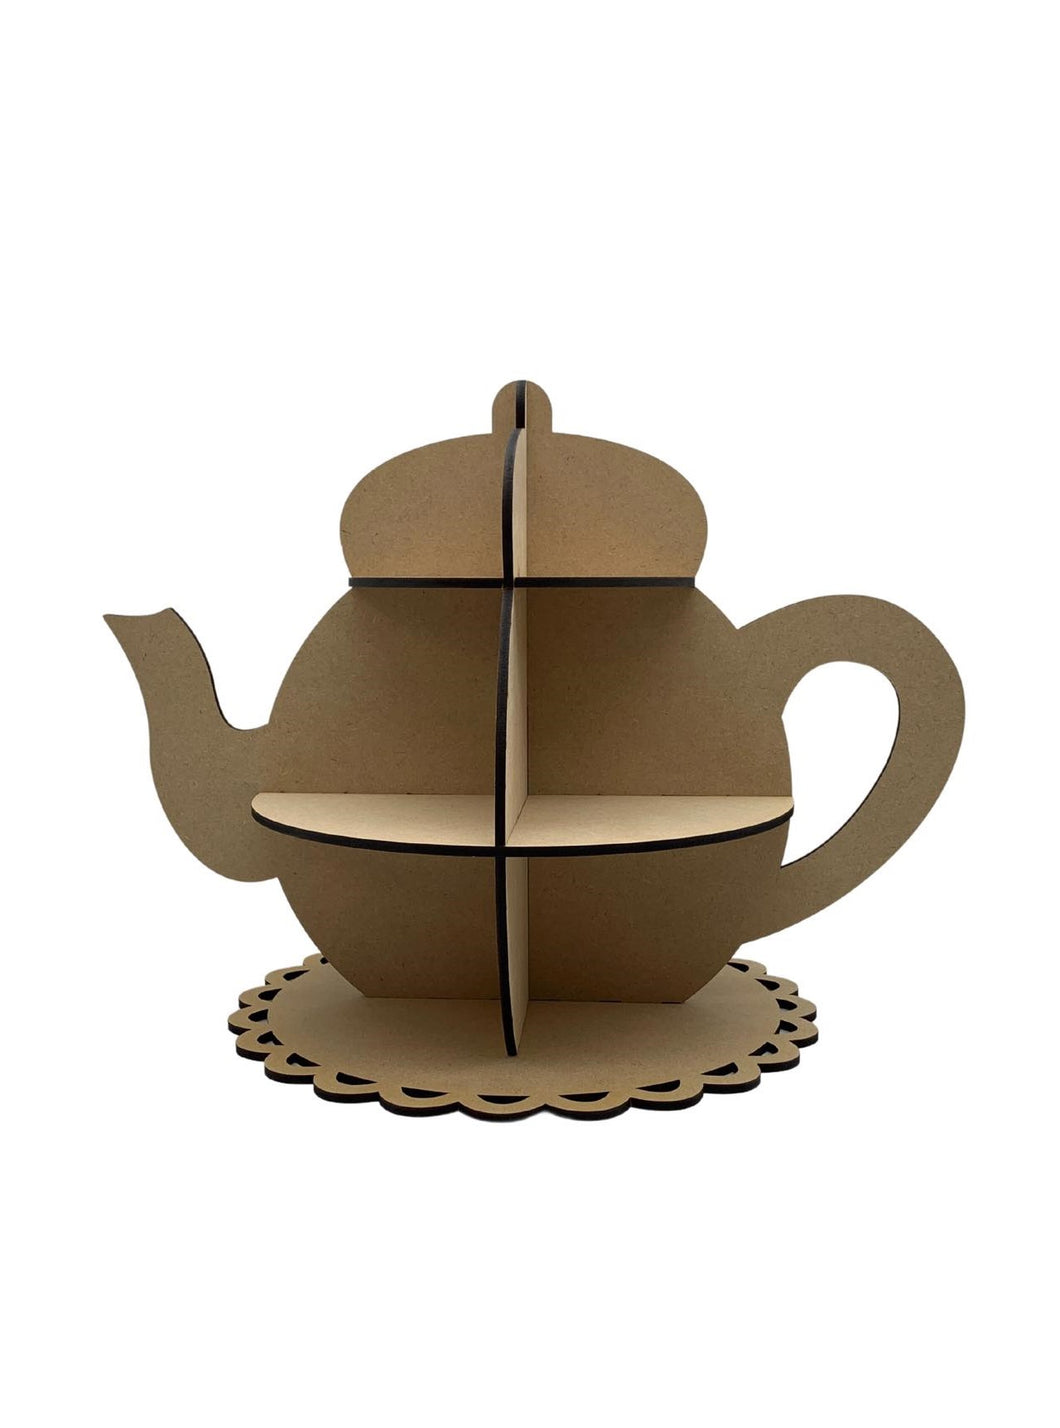 Tea Pot & Tea Cup Cake Stand Set